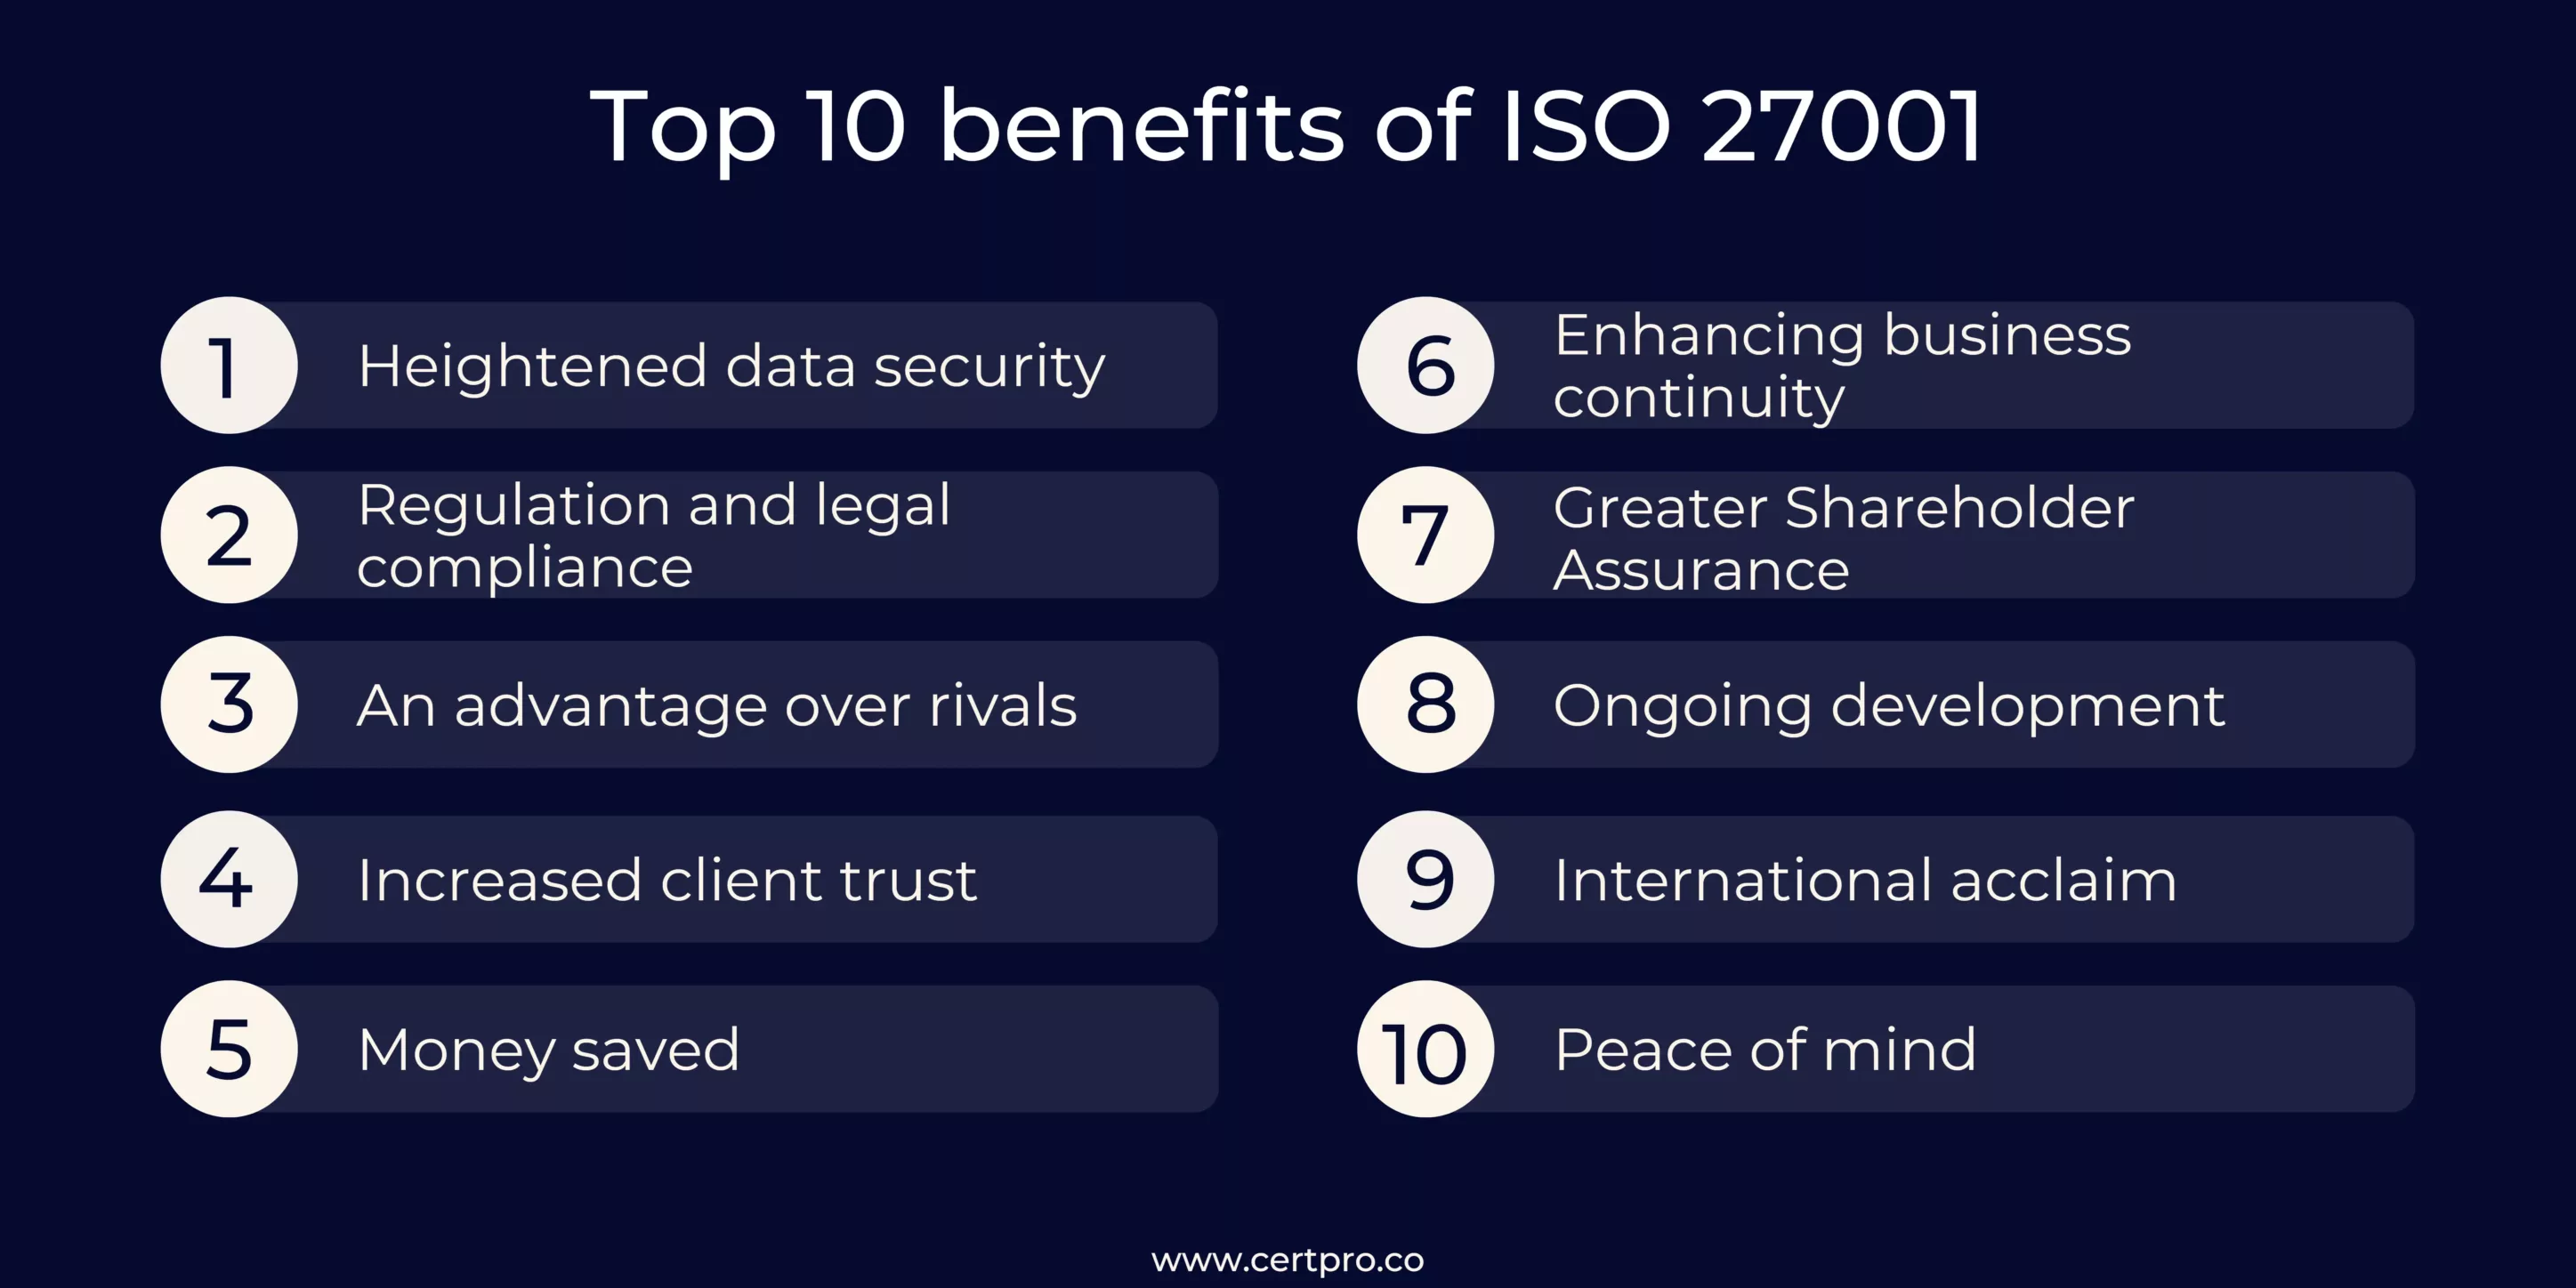 TOP 10 BENEFITS OF ISO 27001